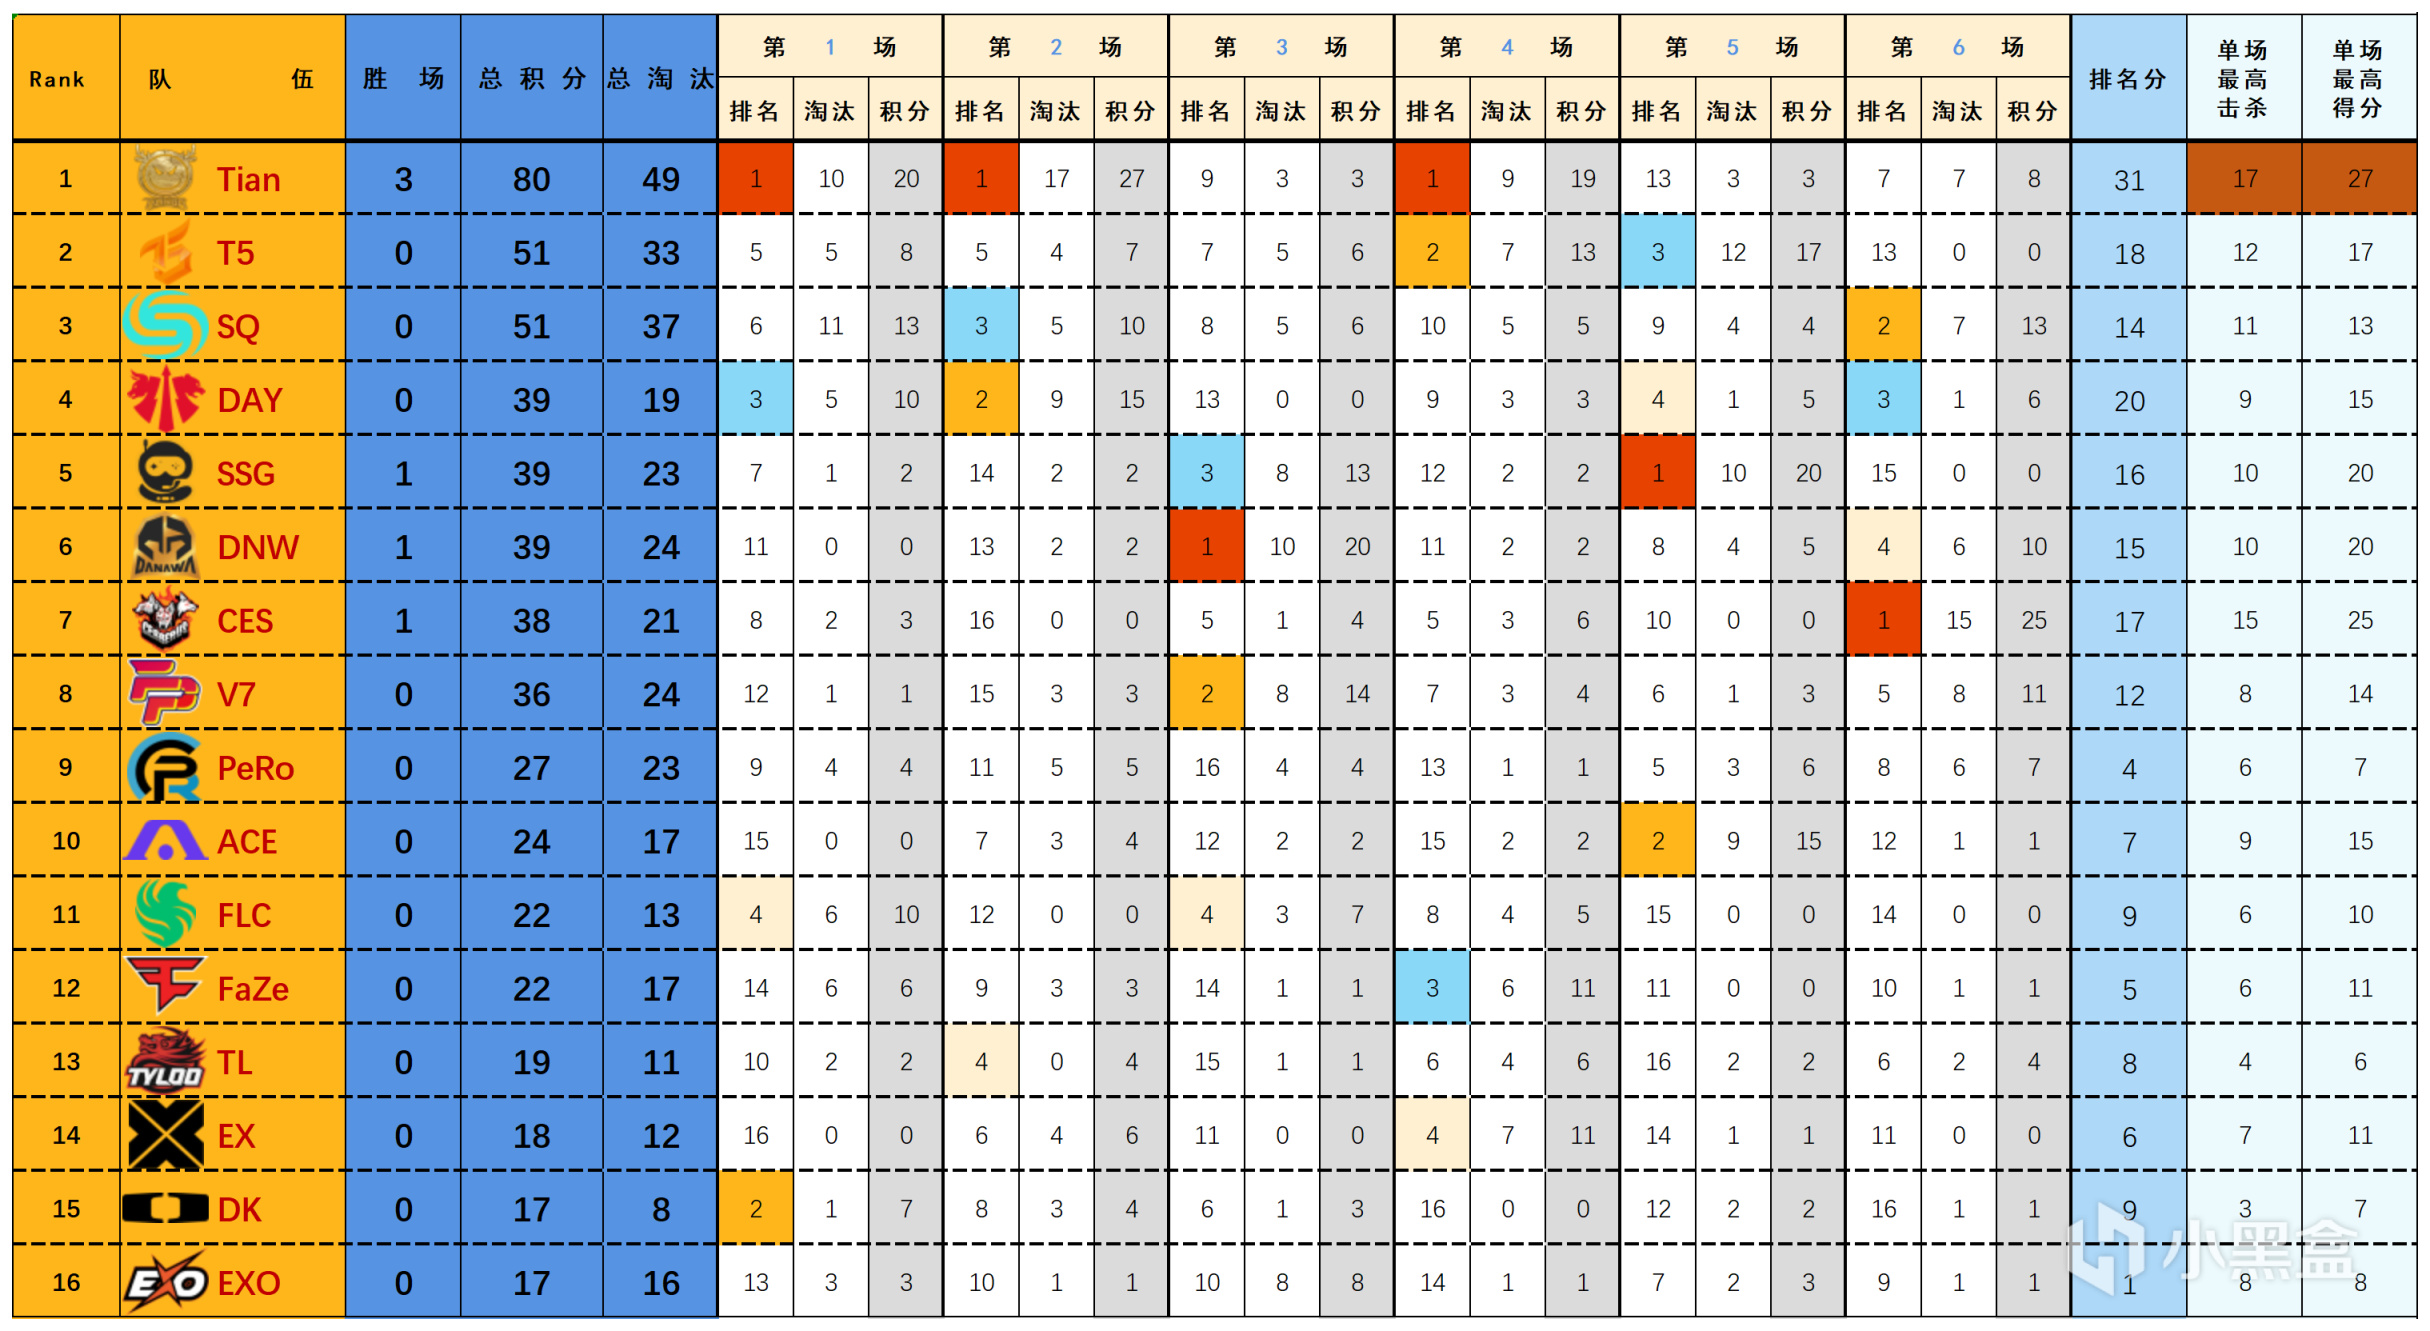 【数据流】23PGC-A组D1,天霸80分暂列榜首,T5_Thanad0l战神16淘汰-第1张